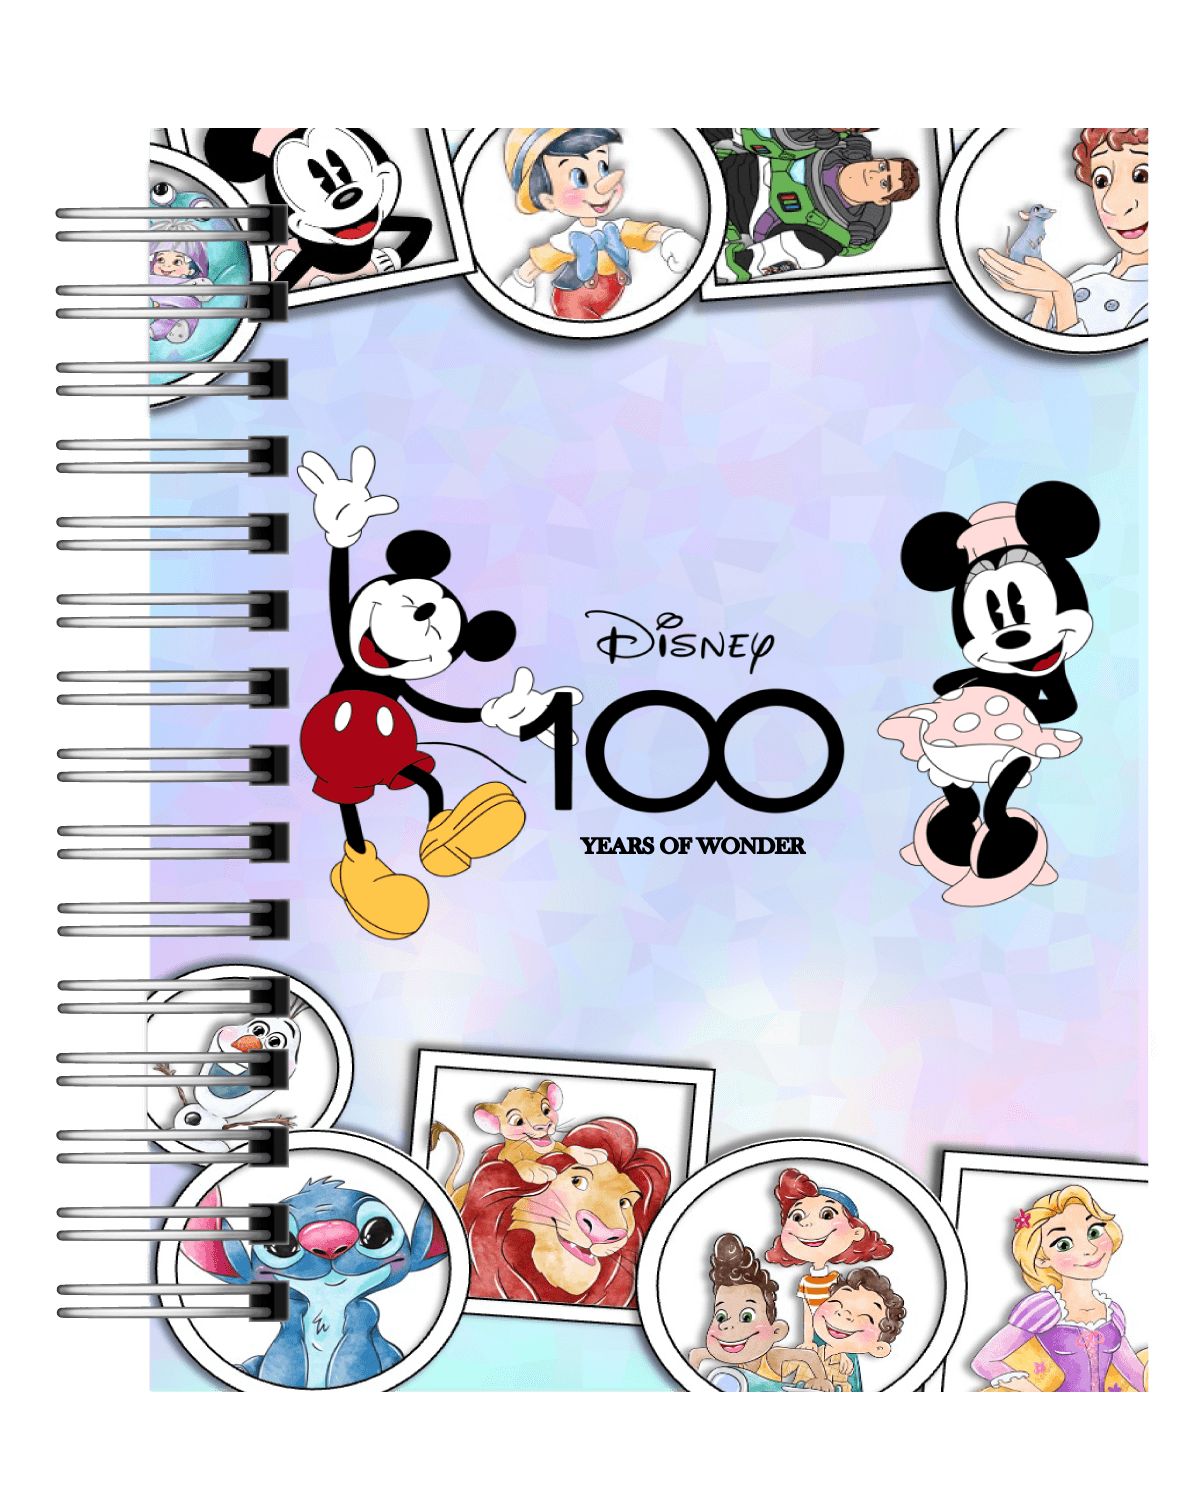 Agenda 2024 Disney 100 años REF: AG001 – Frutopiadetalles